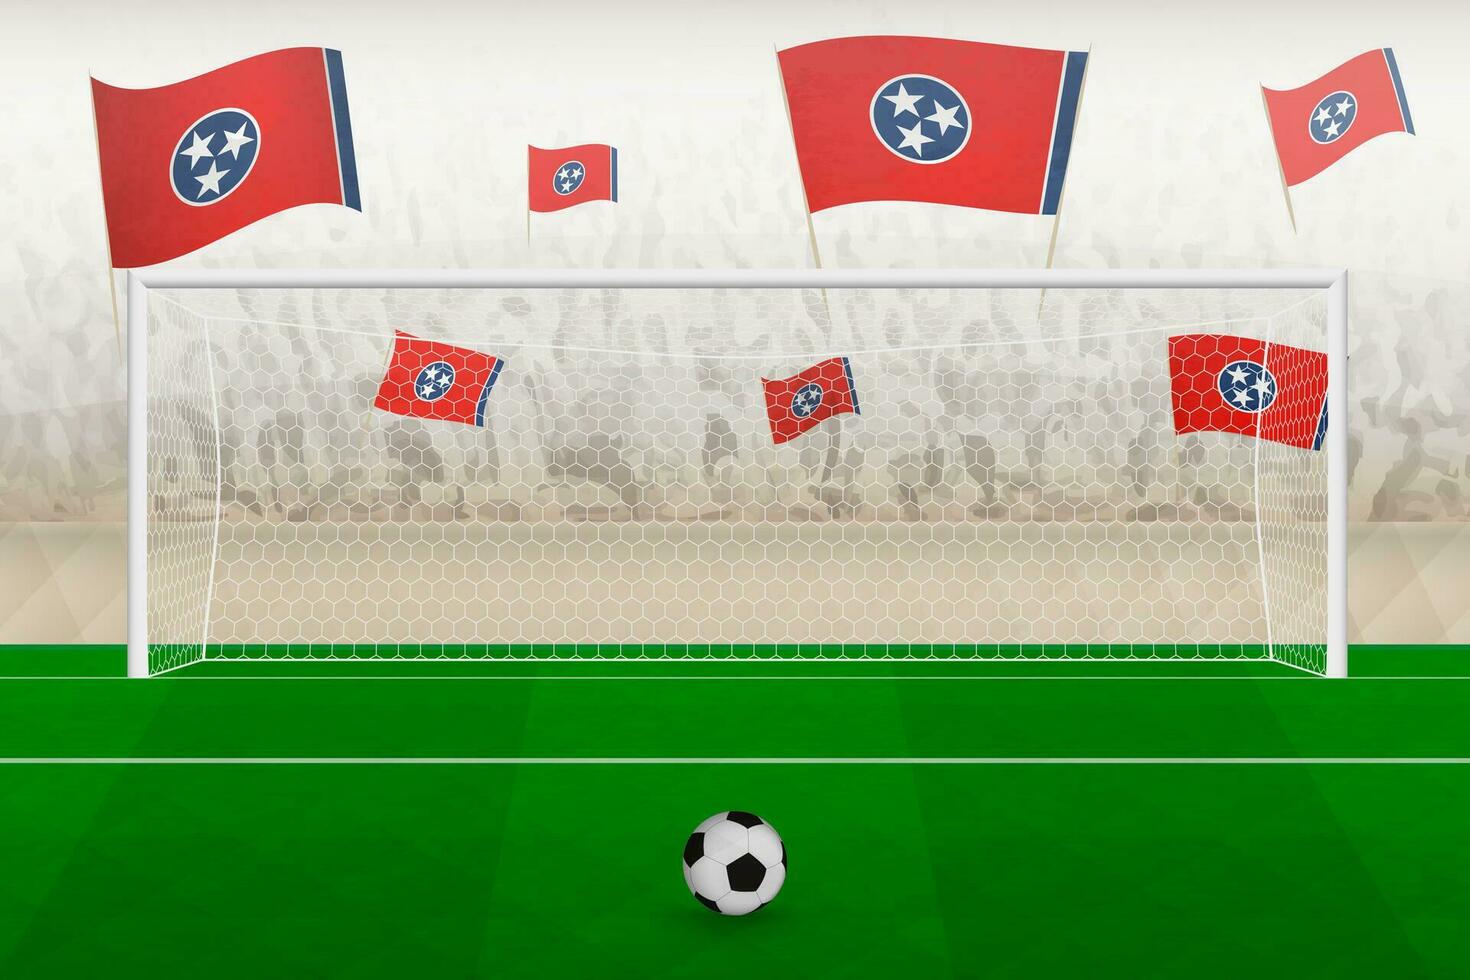 Tennesse fútbol americano equipo aficionados con banderas de Tennesse aplausos en estadio, multa patada concepto en un fútbol fósforo. vector